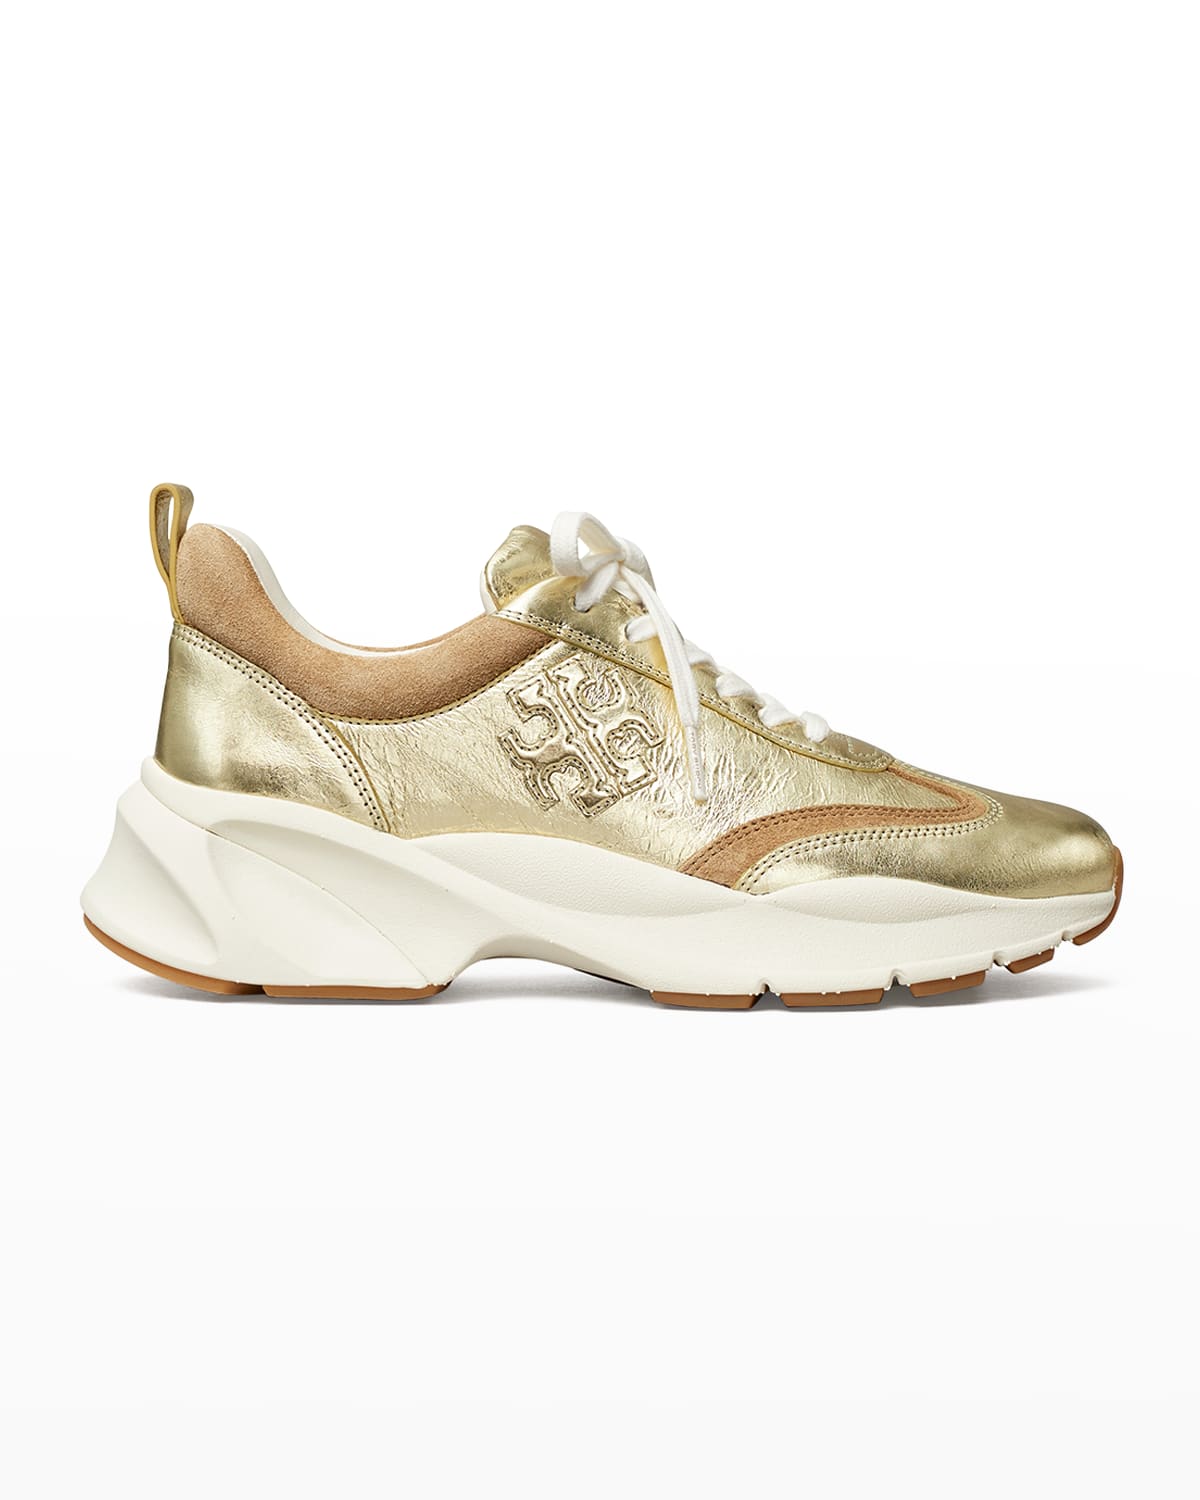 Tory Burch Gold Metallic Shoes | Neiman Marcus